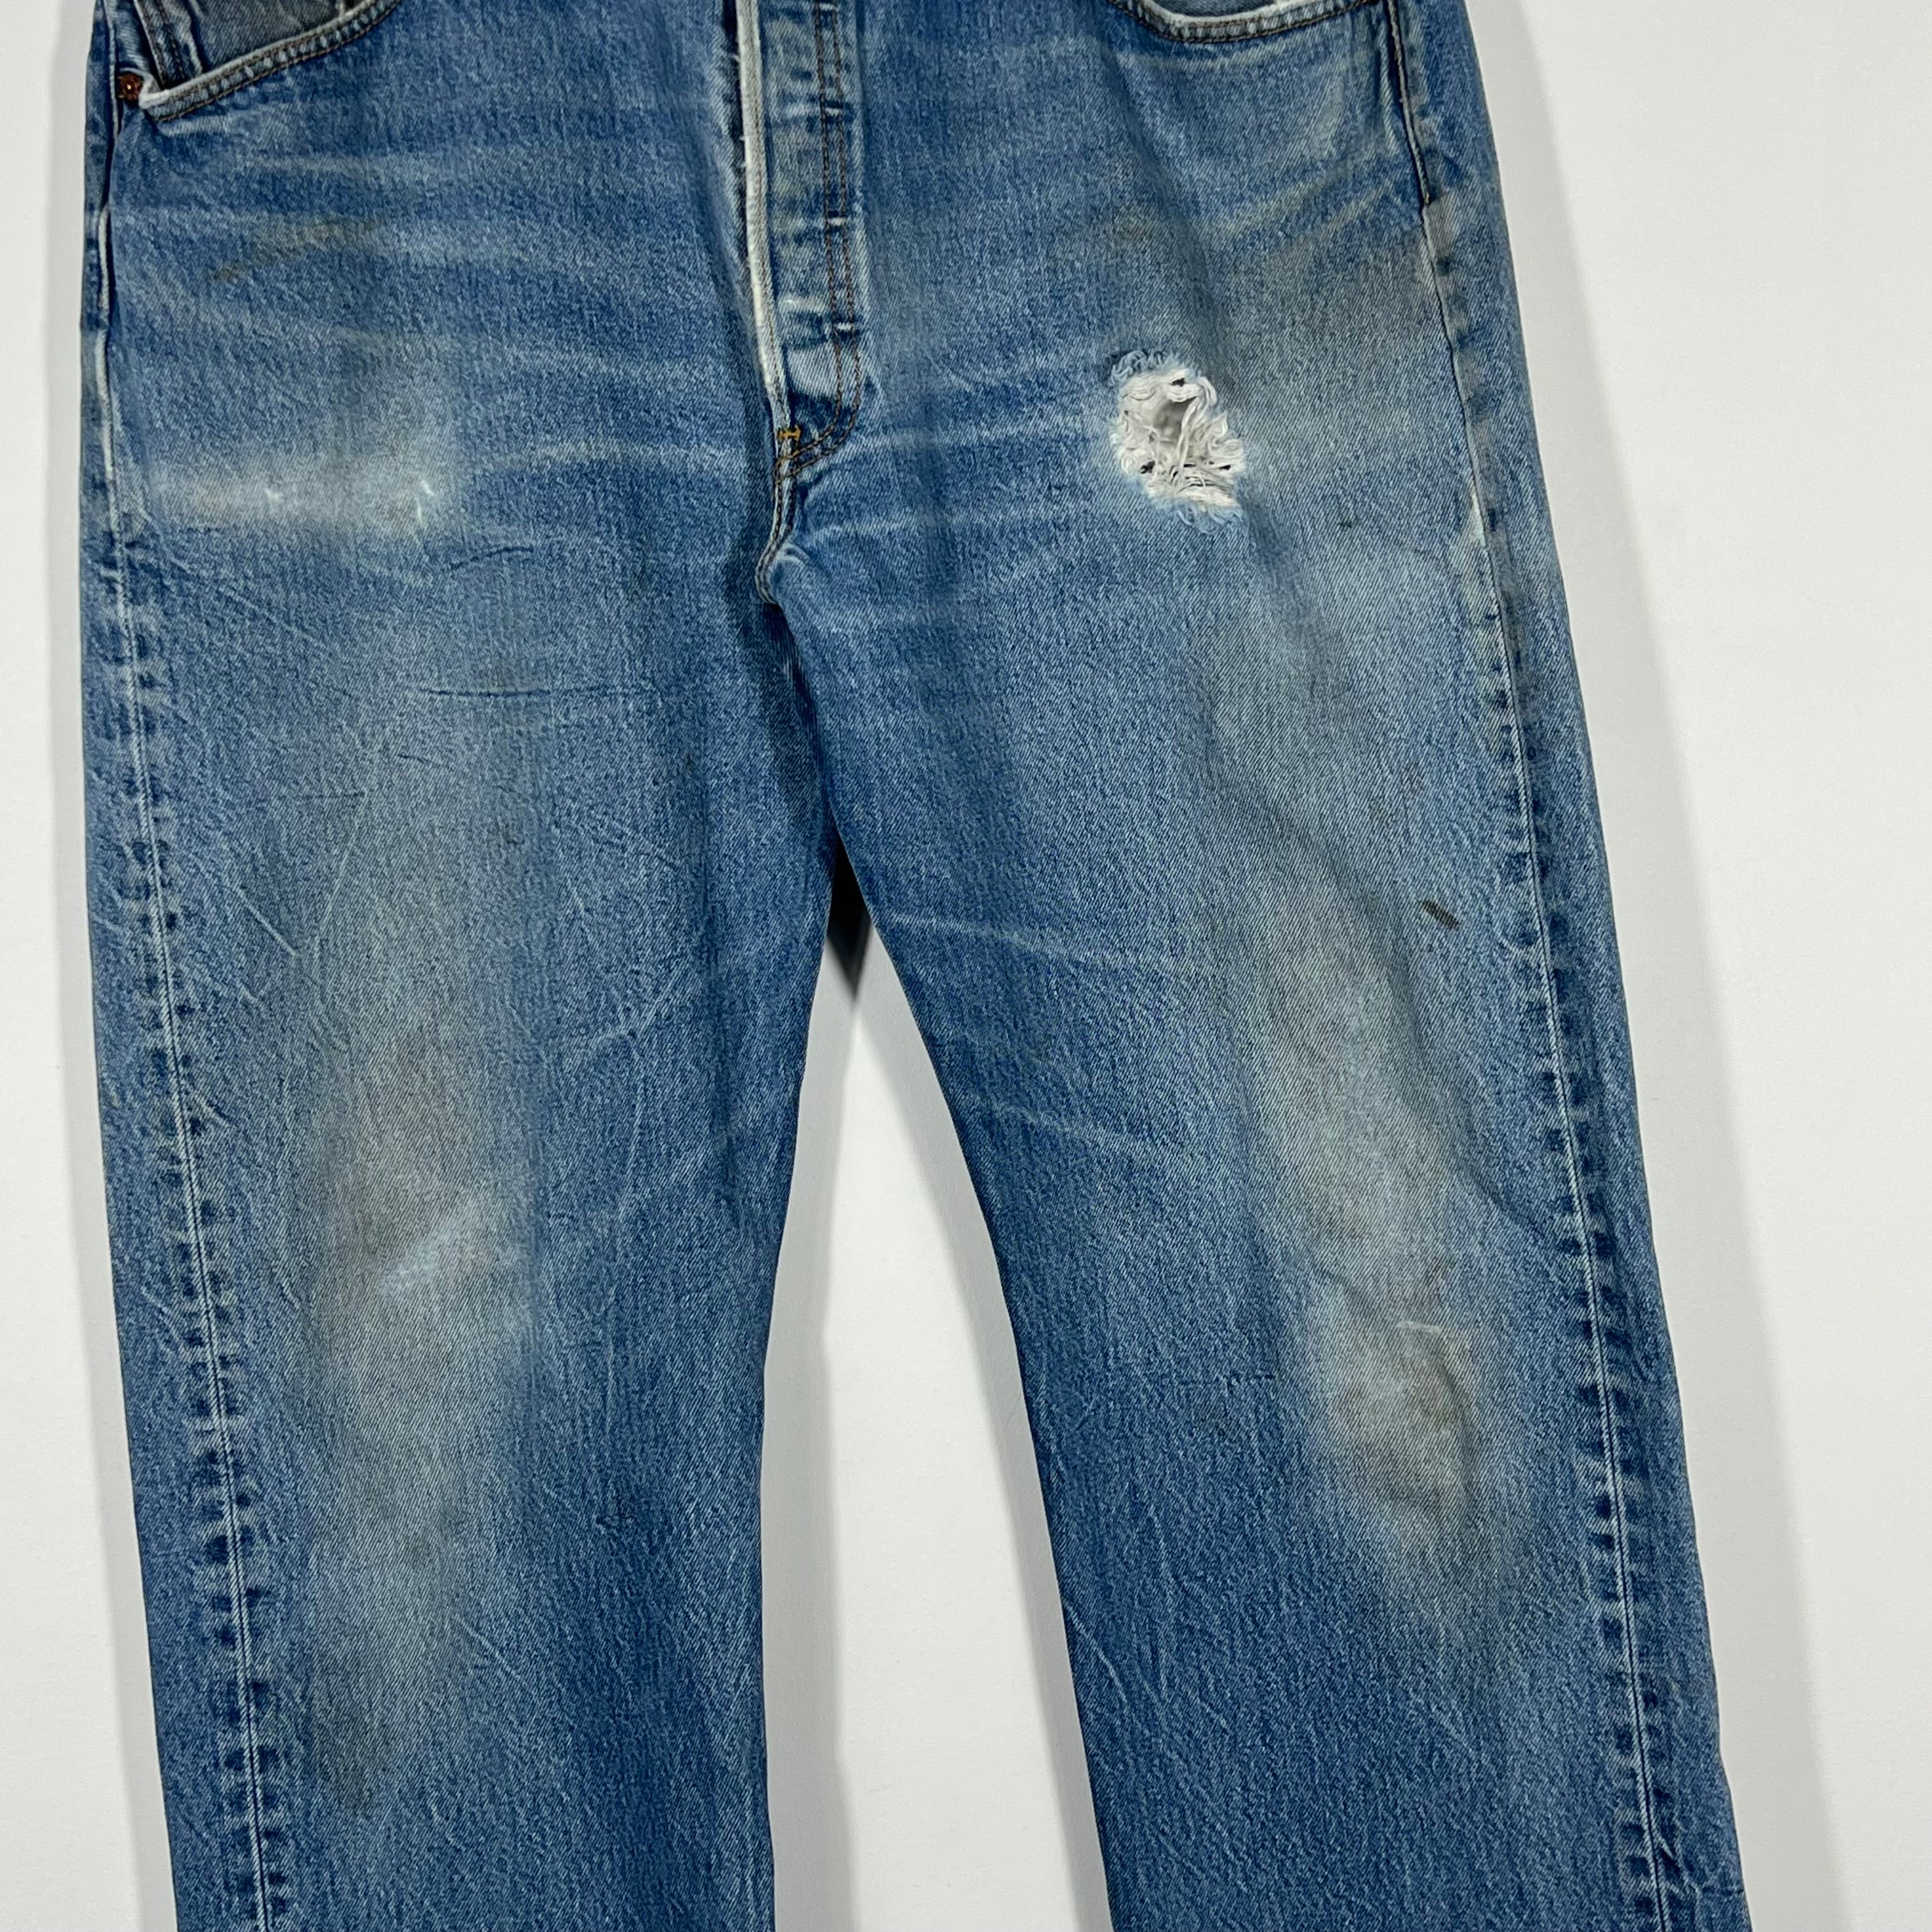 Vintage Levis 501 Jeans - Men's 40/34